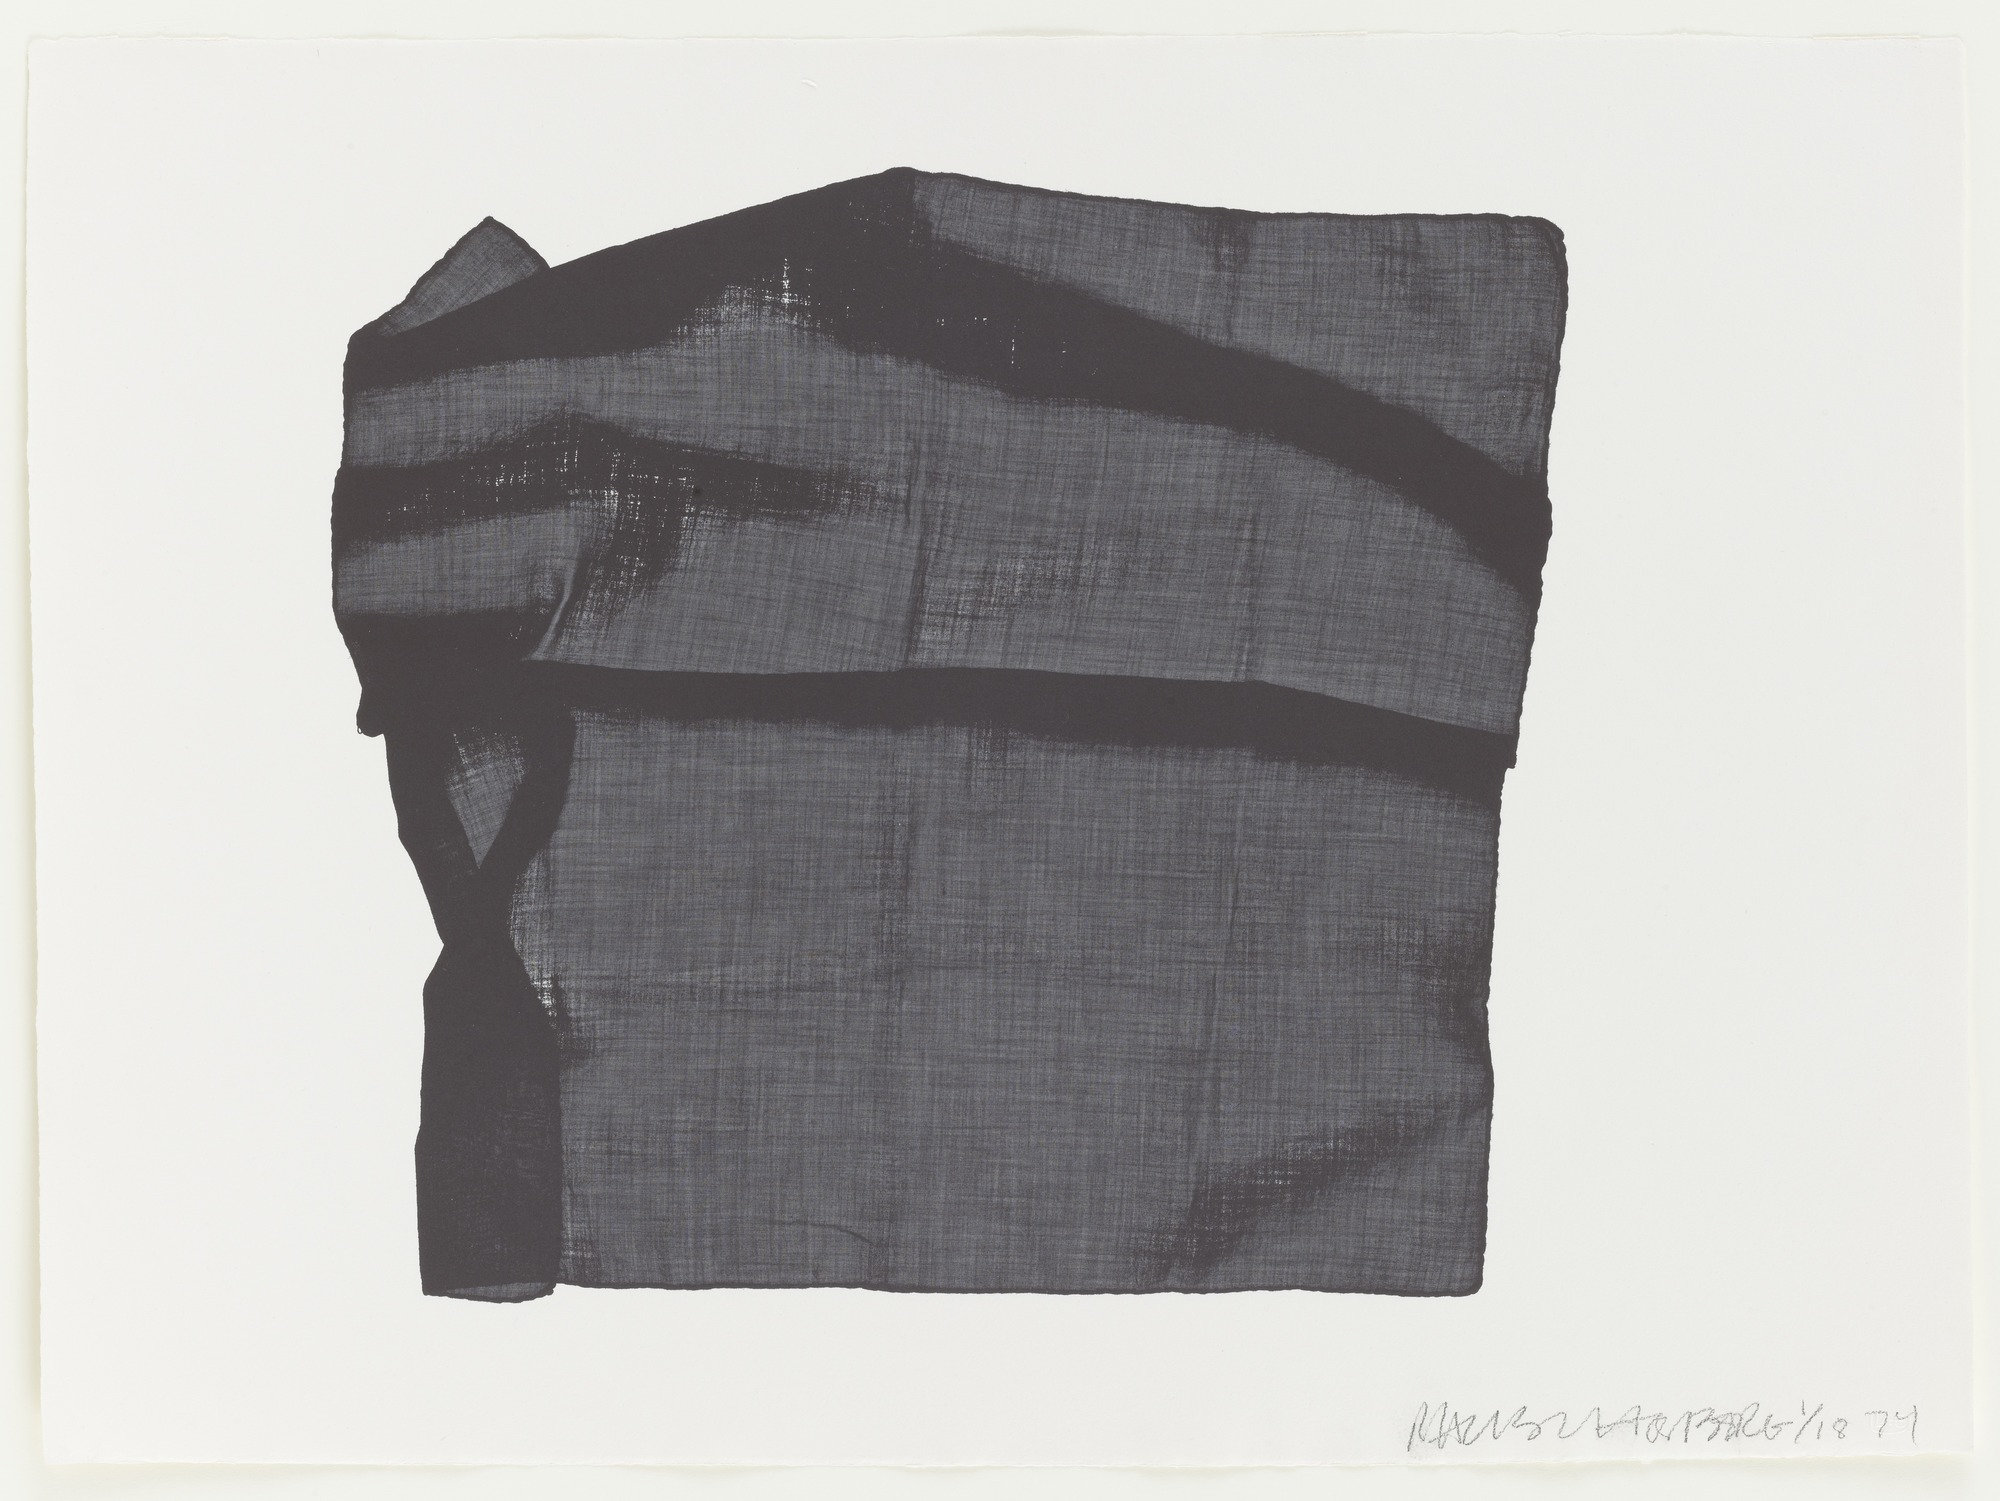 Robert Rauschenberg, Veils, 4, 1974. Courtesy of the Museum of Modern Art.